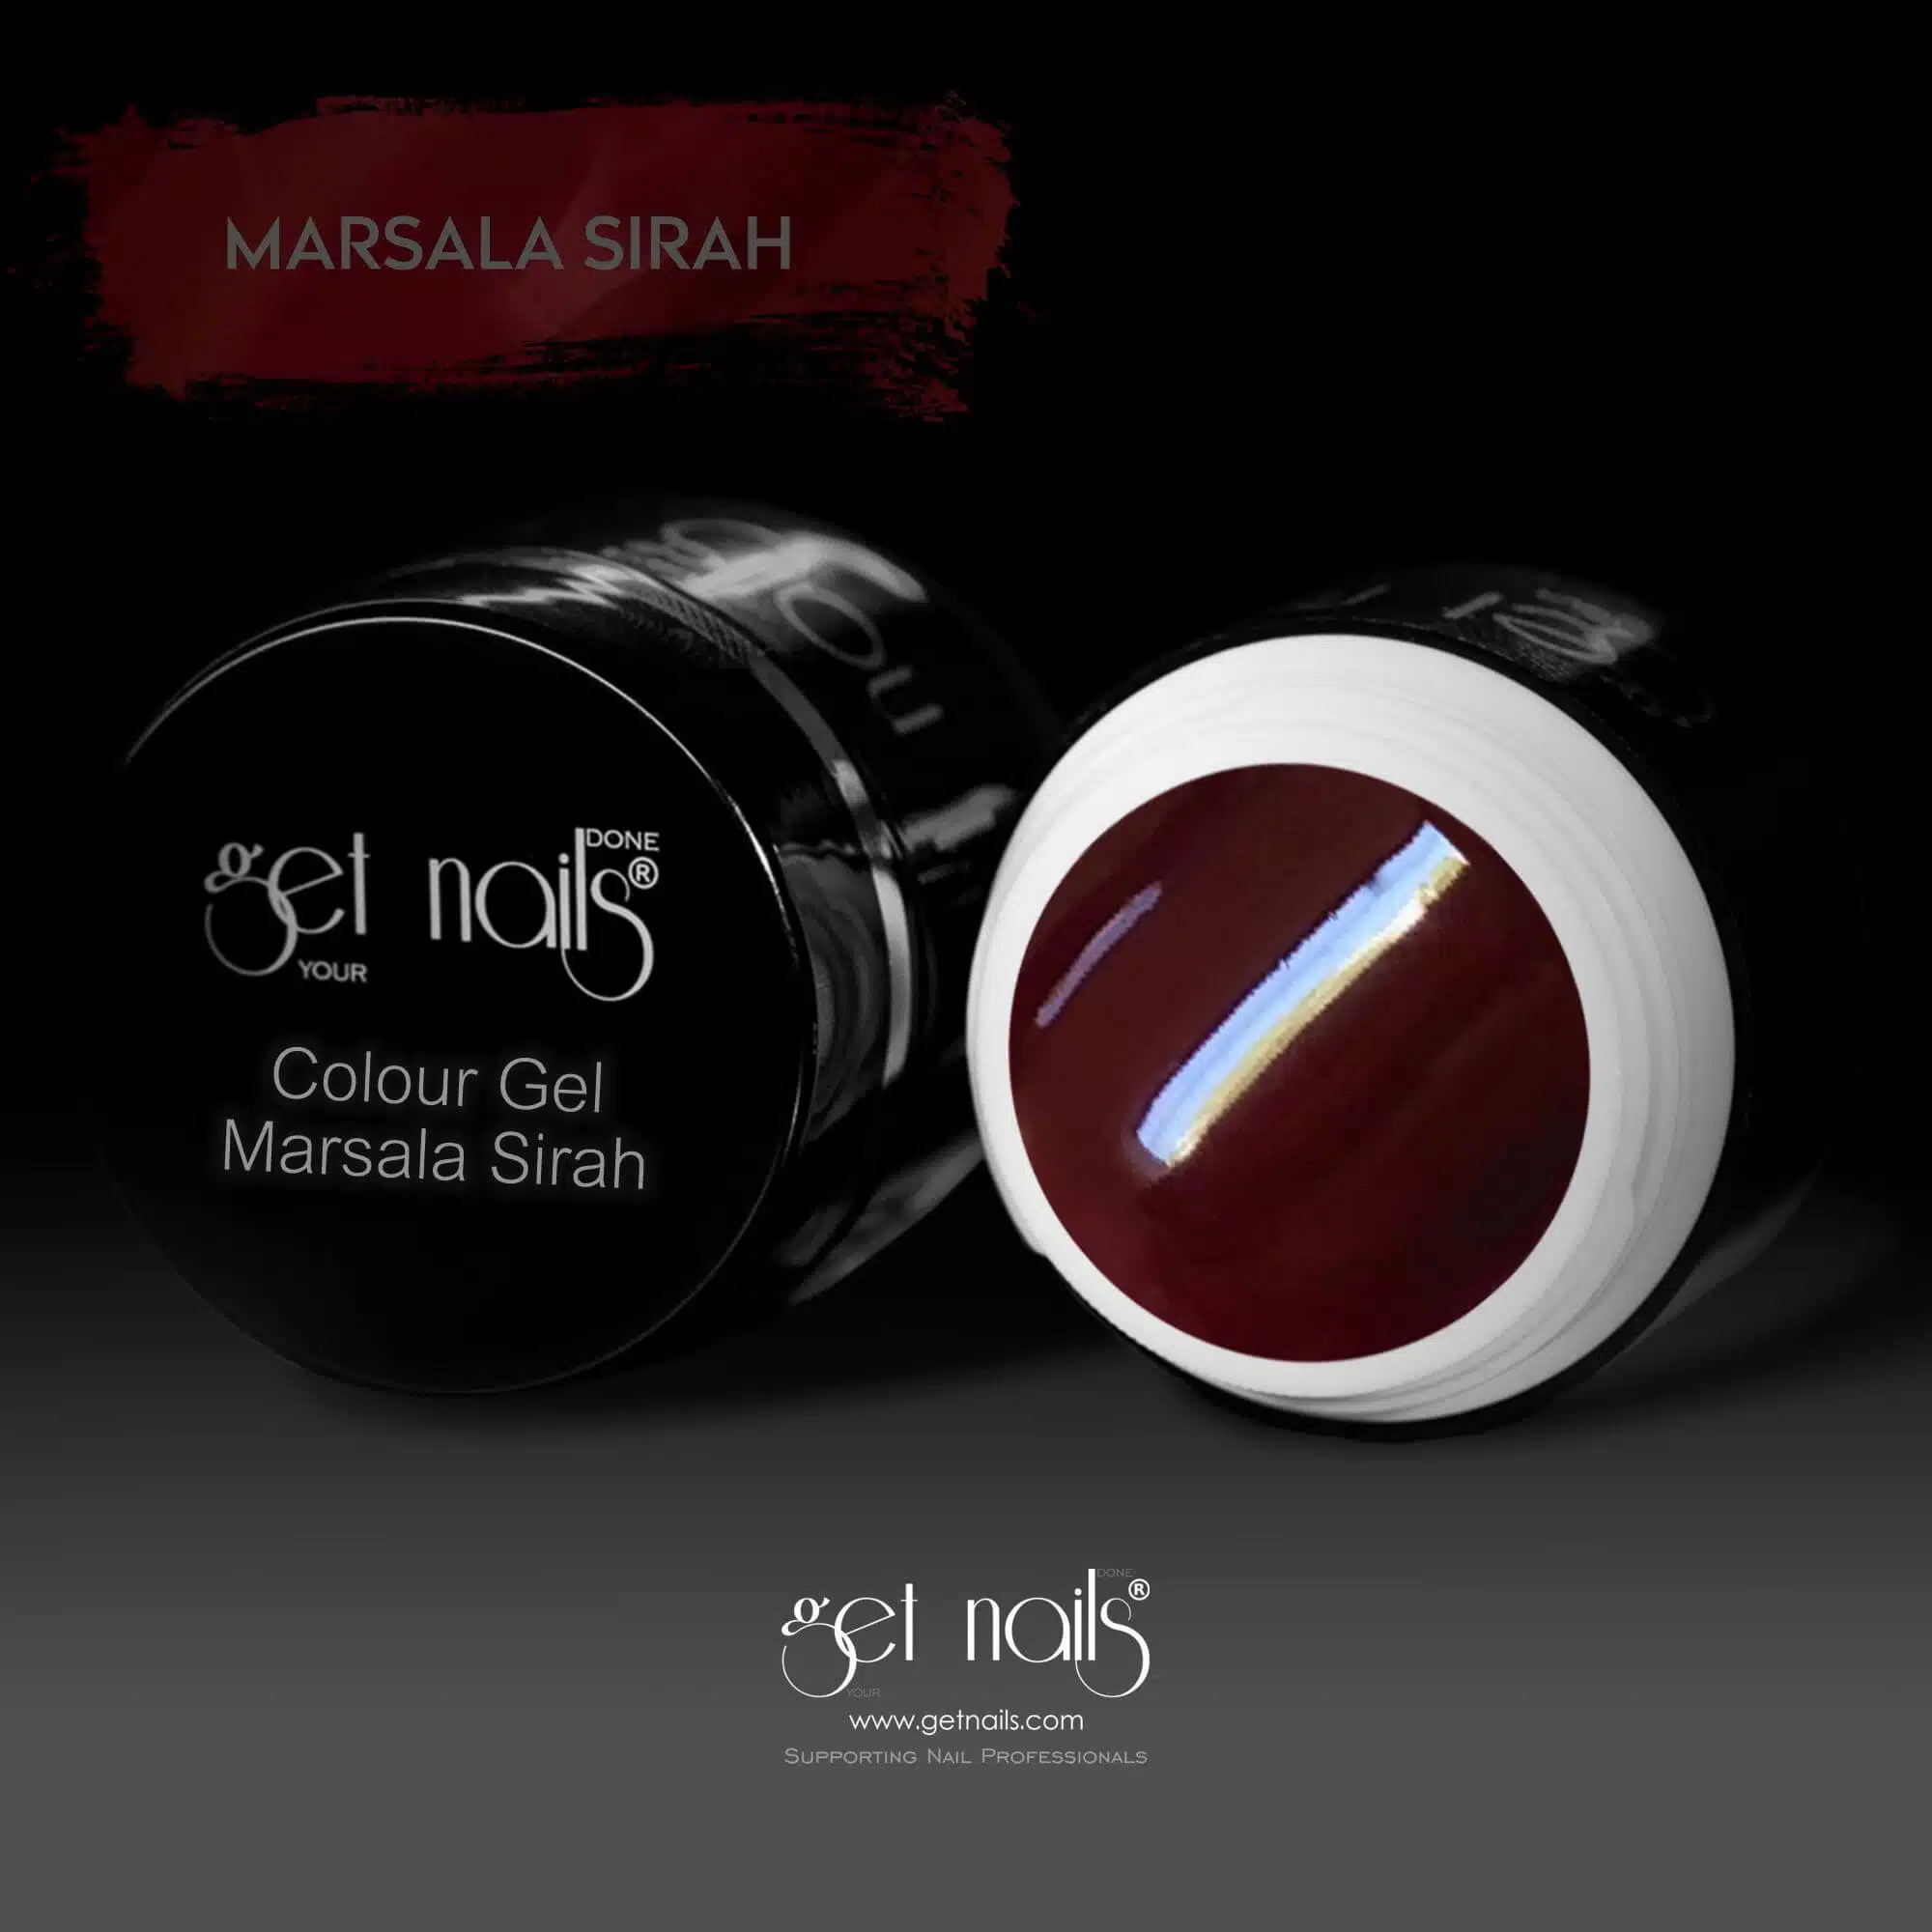 Get Nails Austria - Цветной гель Marsala Syrah 5g